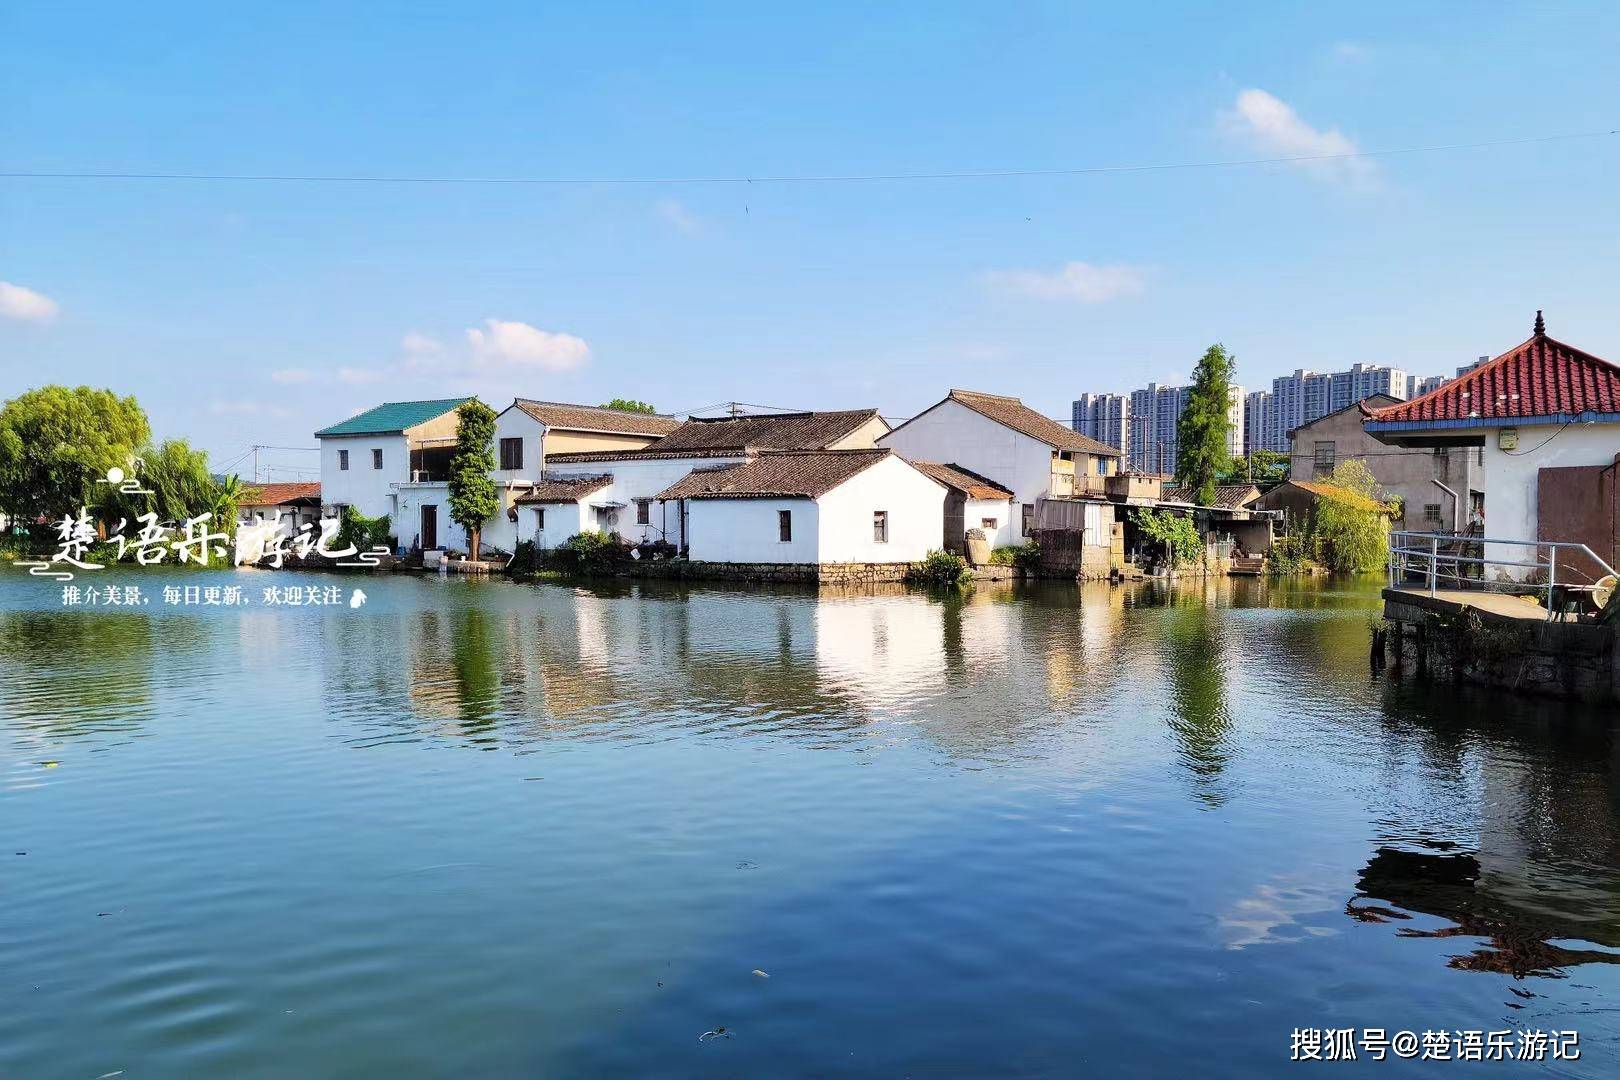 浙江宁波值得一去的水乡古村,靠近地铁站,站前新增火车风情景点